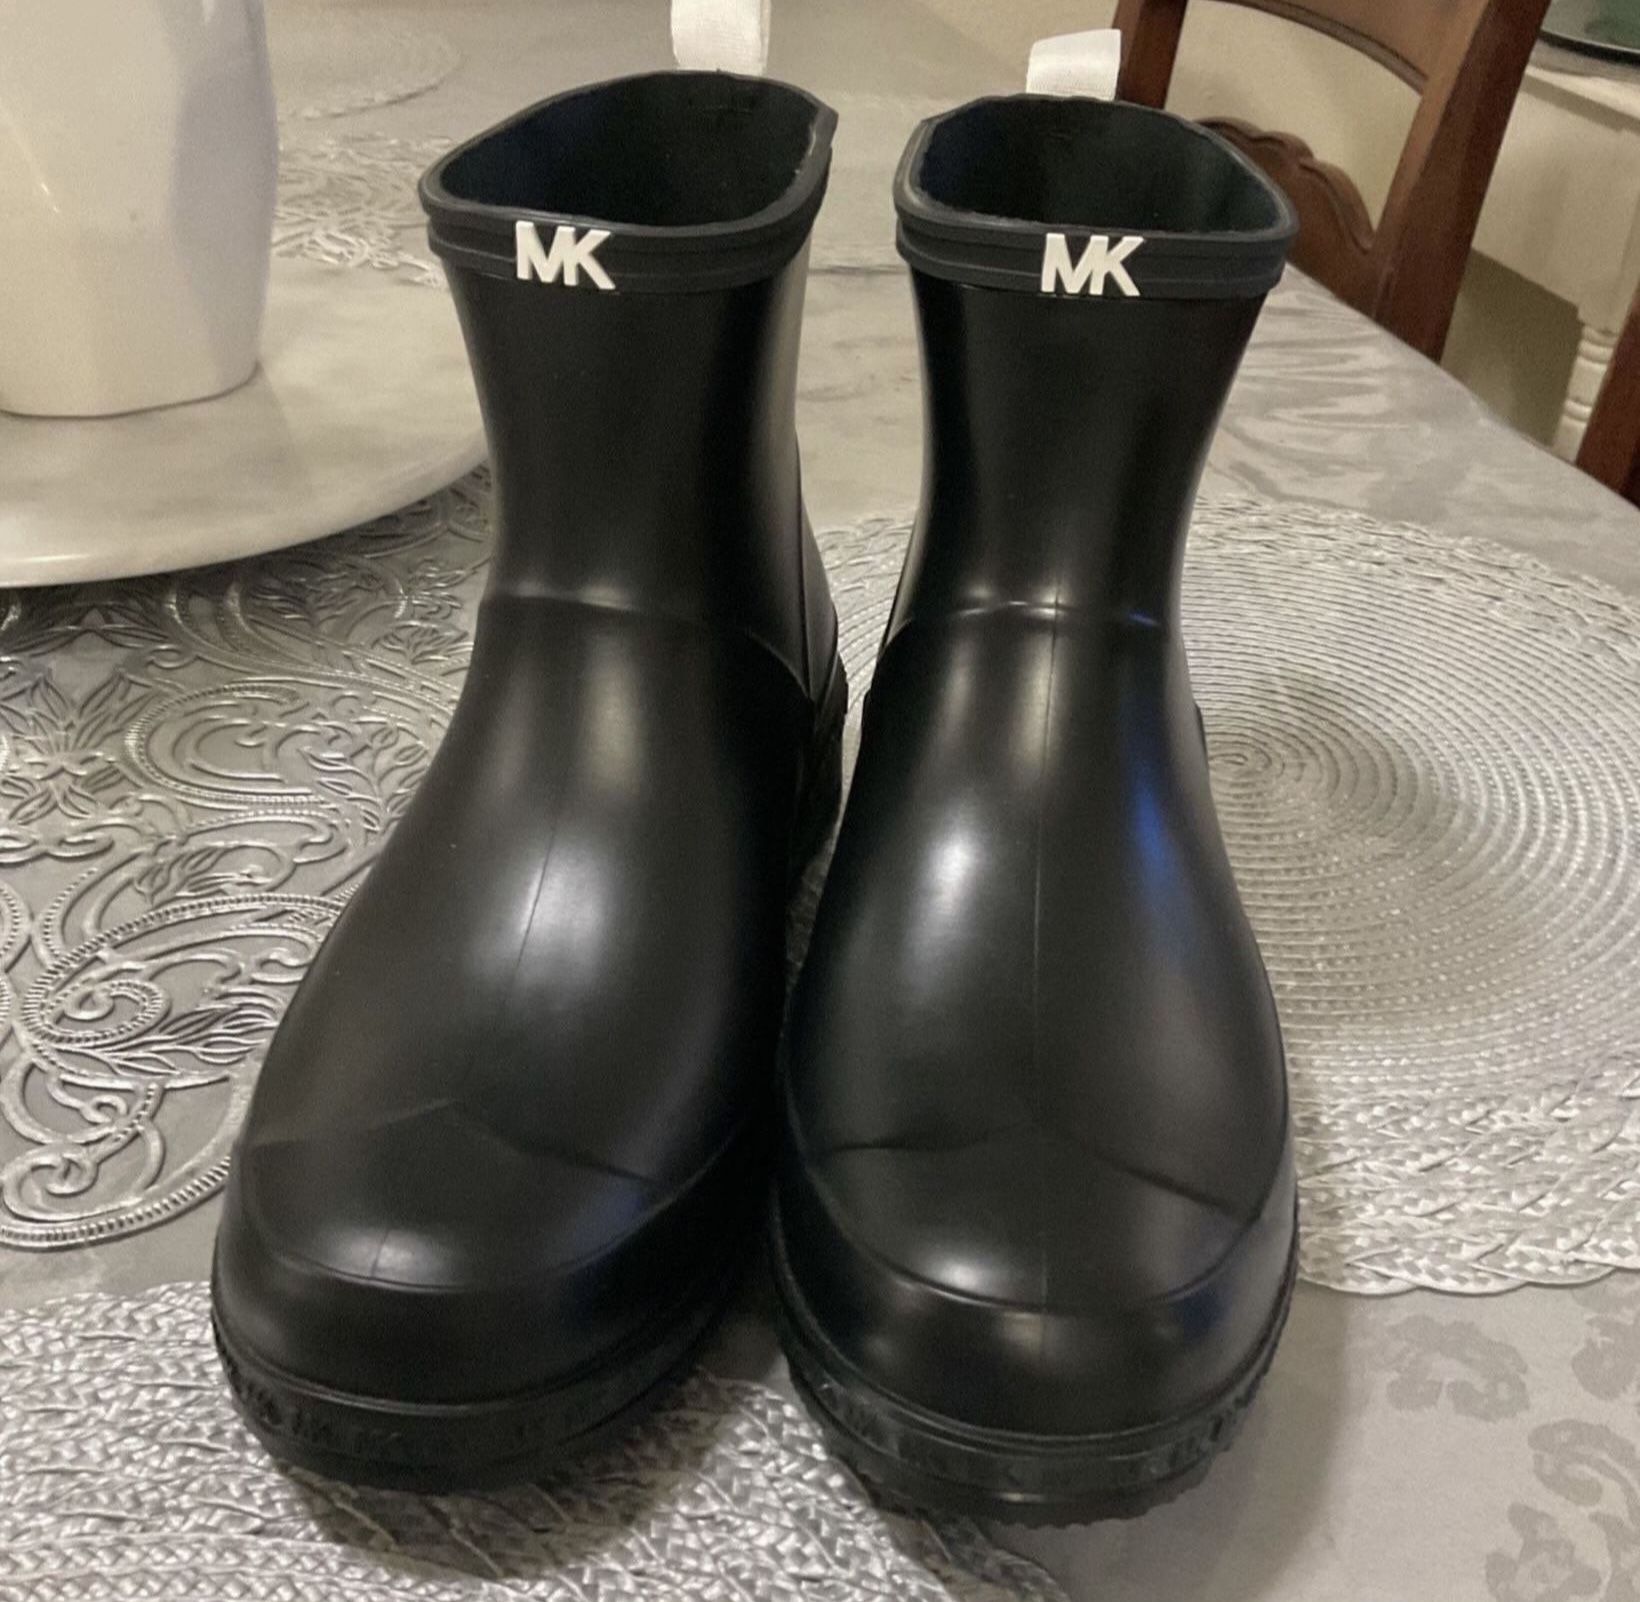 New Women Boots Michael Kors 